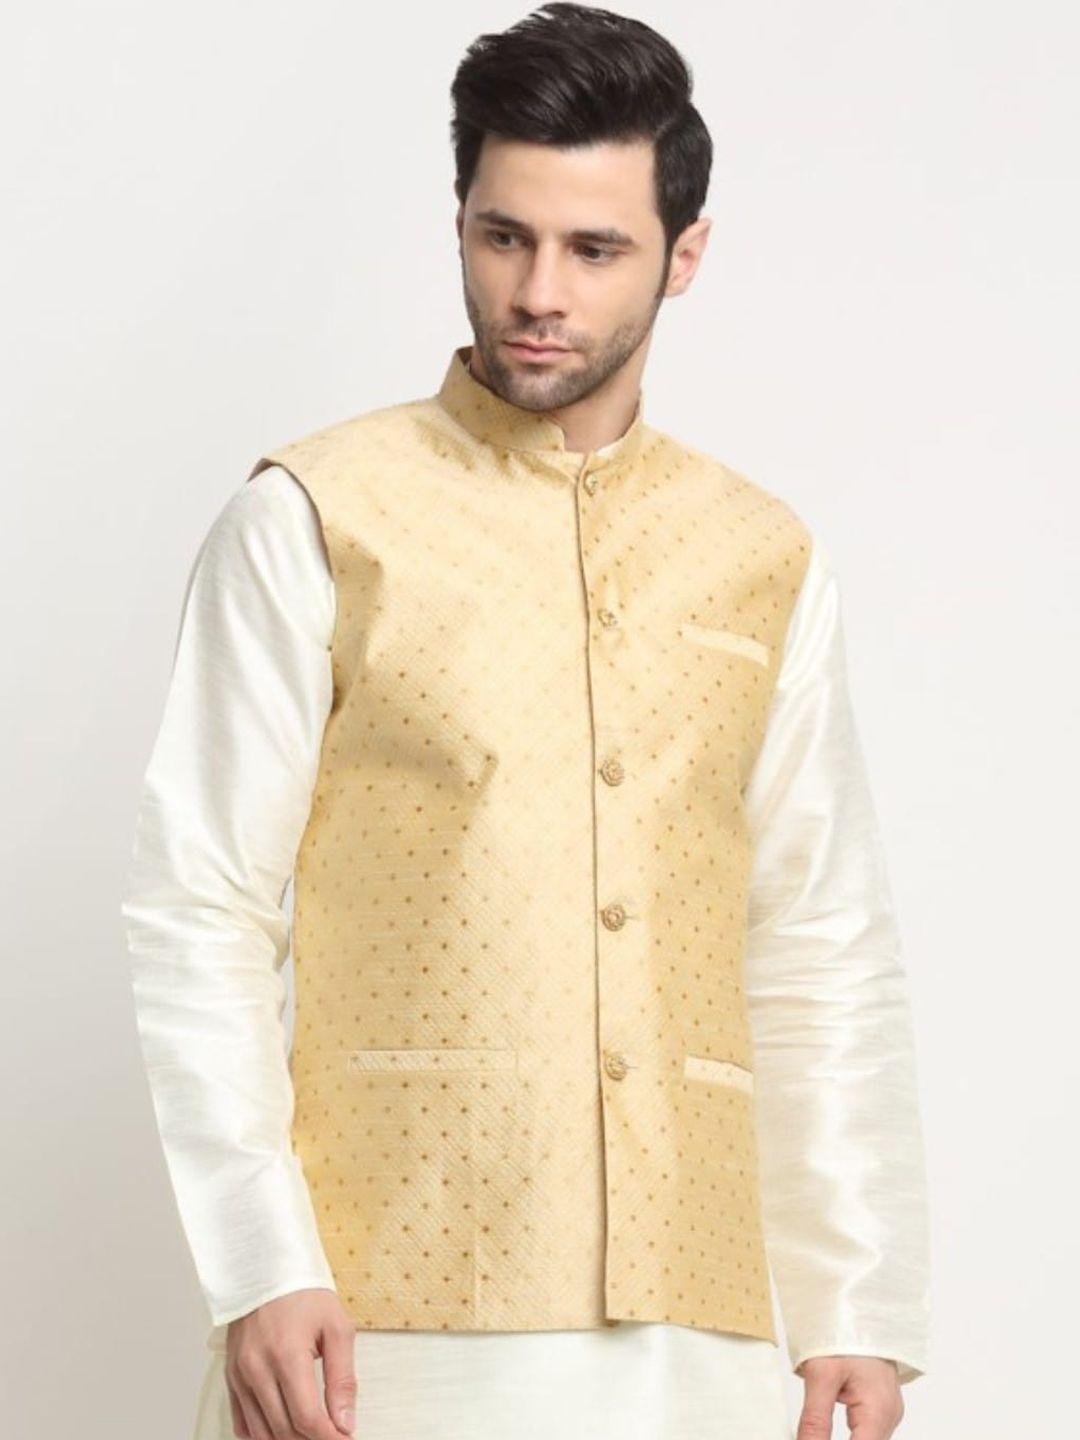 kraft-india-ethnic-motifs-woven-design-nehru-jackets